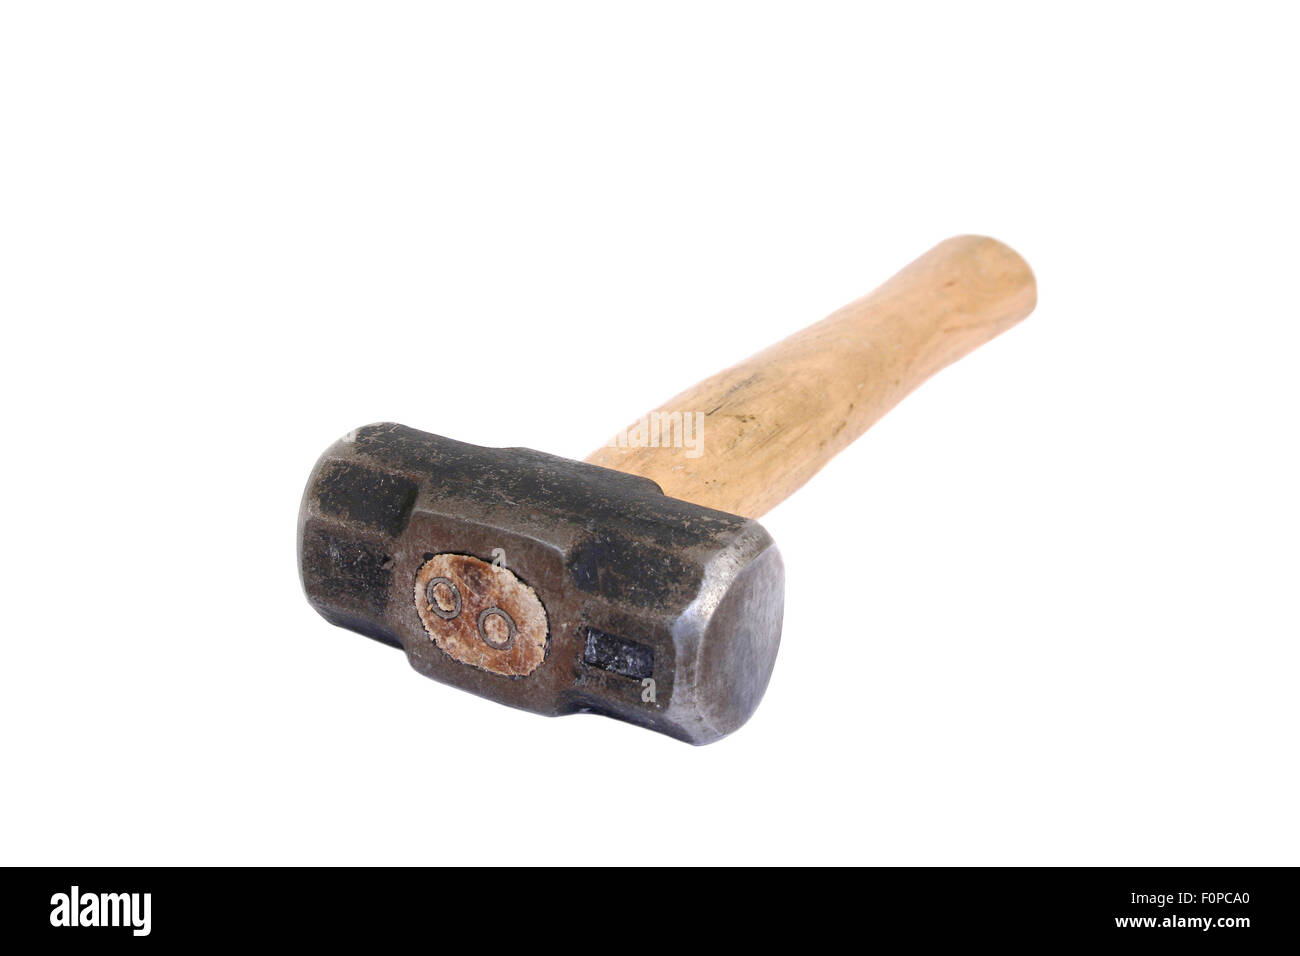 Sledge Hammer isolated on white Stock Photo